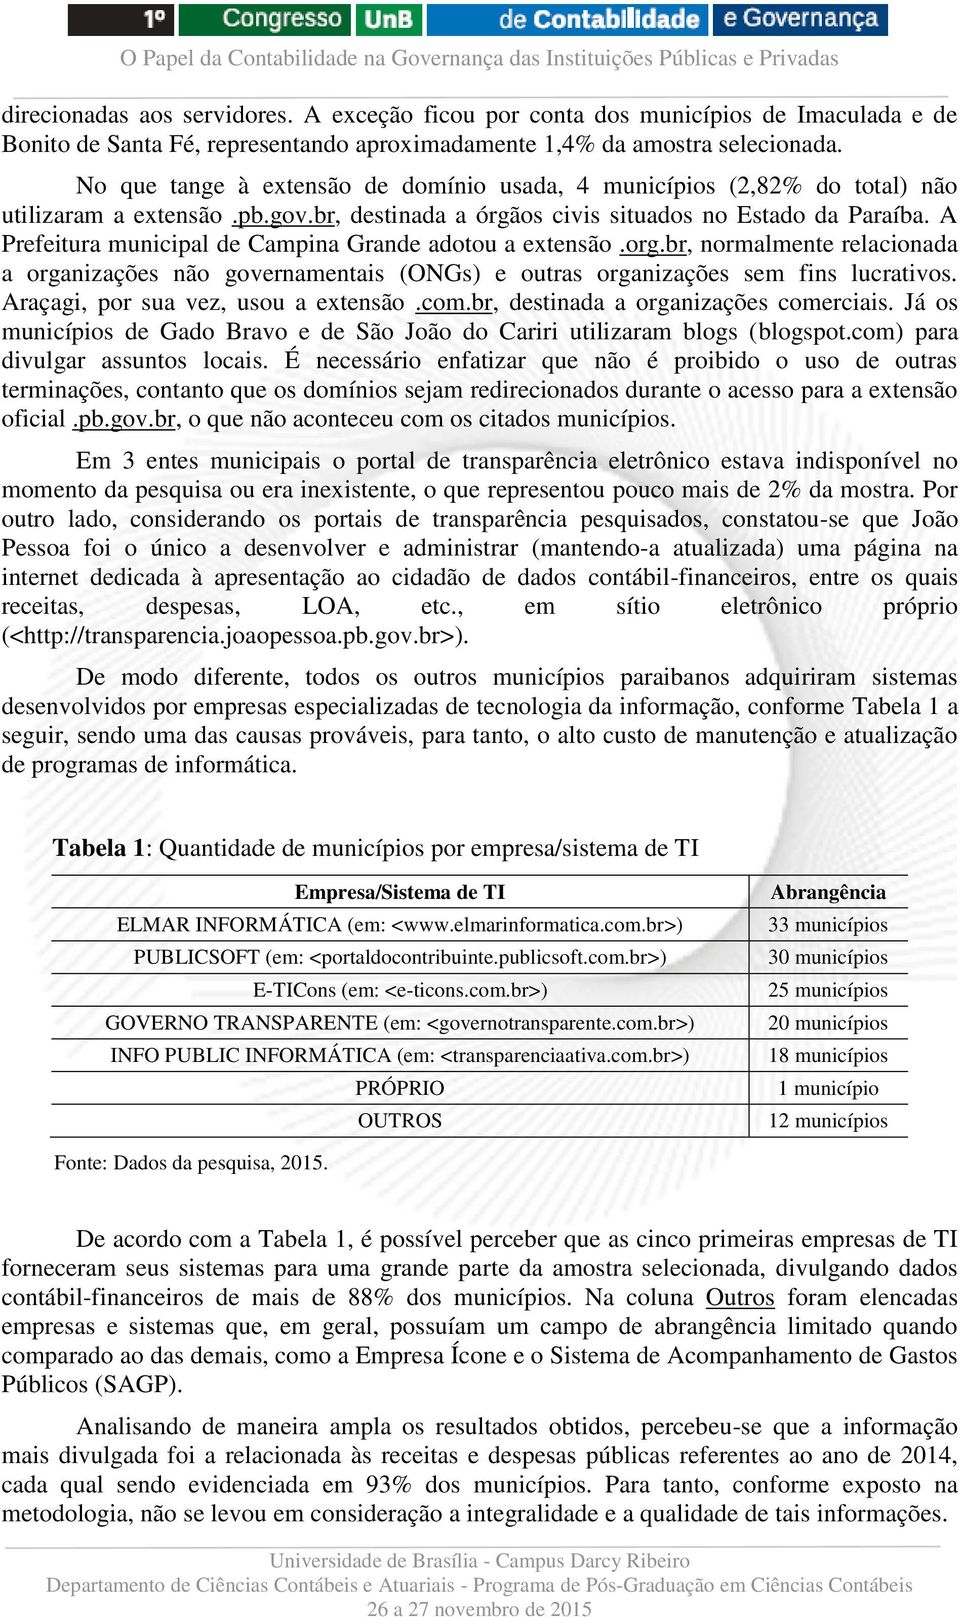 A Prefeitura municipal de Campina Grande adotou a extensão.org.br, normalmente relacionada a organizações não governamentais (ONGs) e outras organizações sem fins lucrativos.